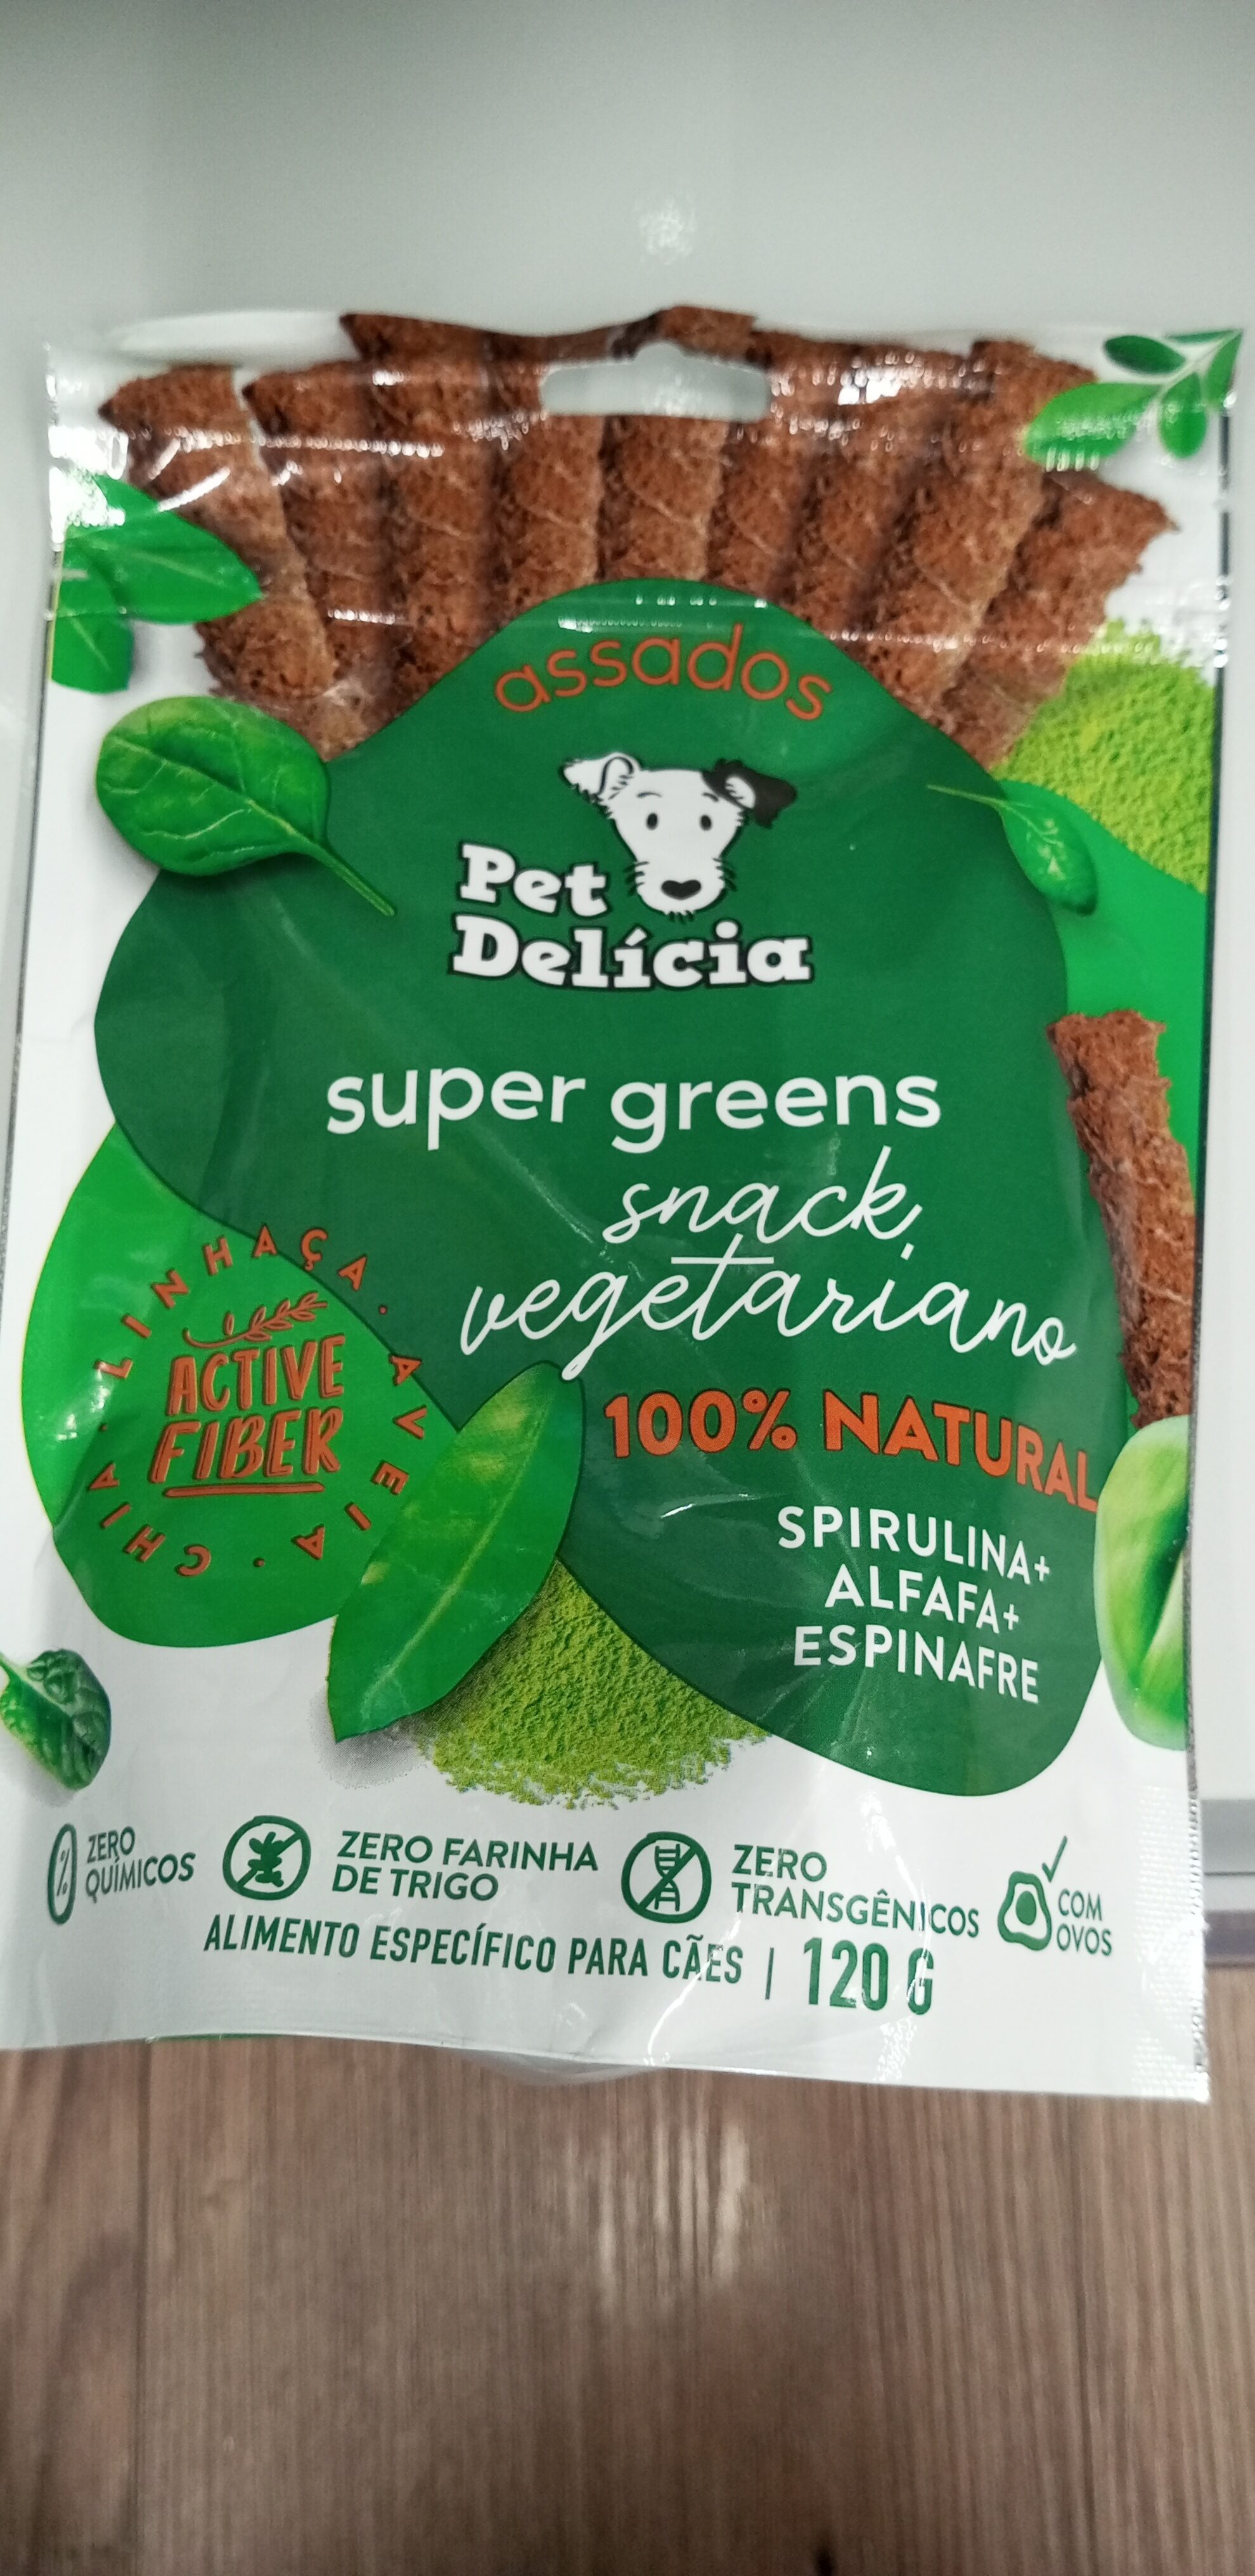 Snack cães pet delícia 120g super green - Product - pt